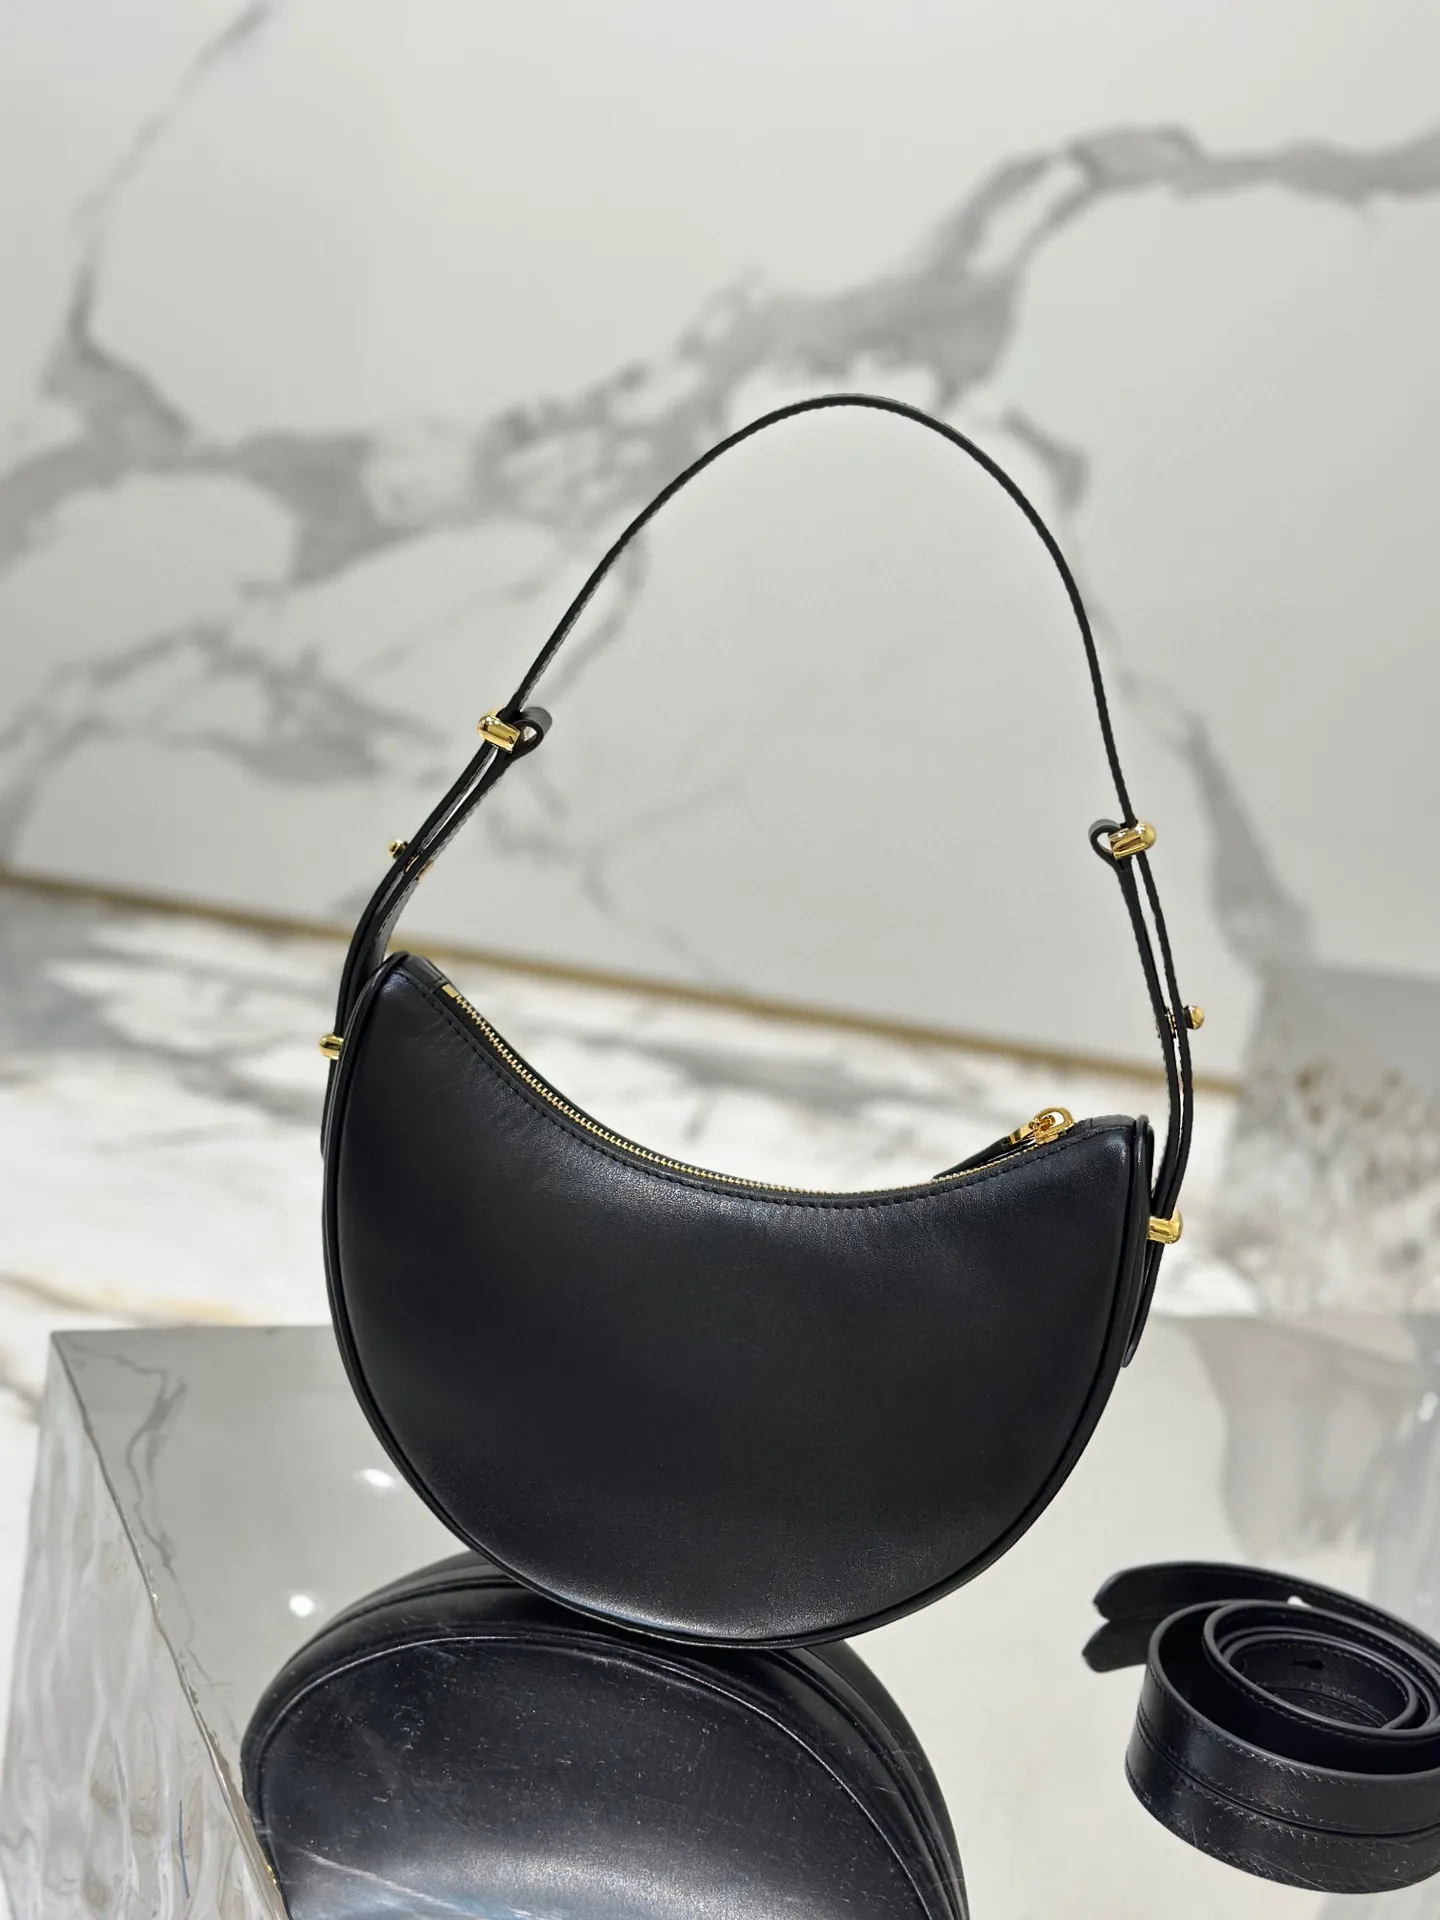 黒いデザイナーバッグハンドバッグ織りバッグ本革デザイナーバッグ女性デザイナーショルダーバッグミニバッグレザーバッグクロスボディバッグ3色で利用可能